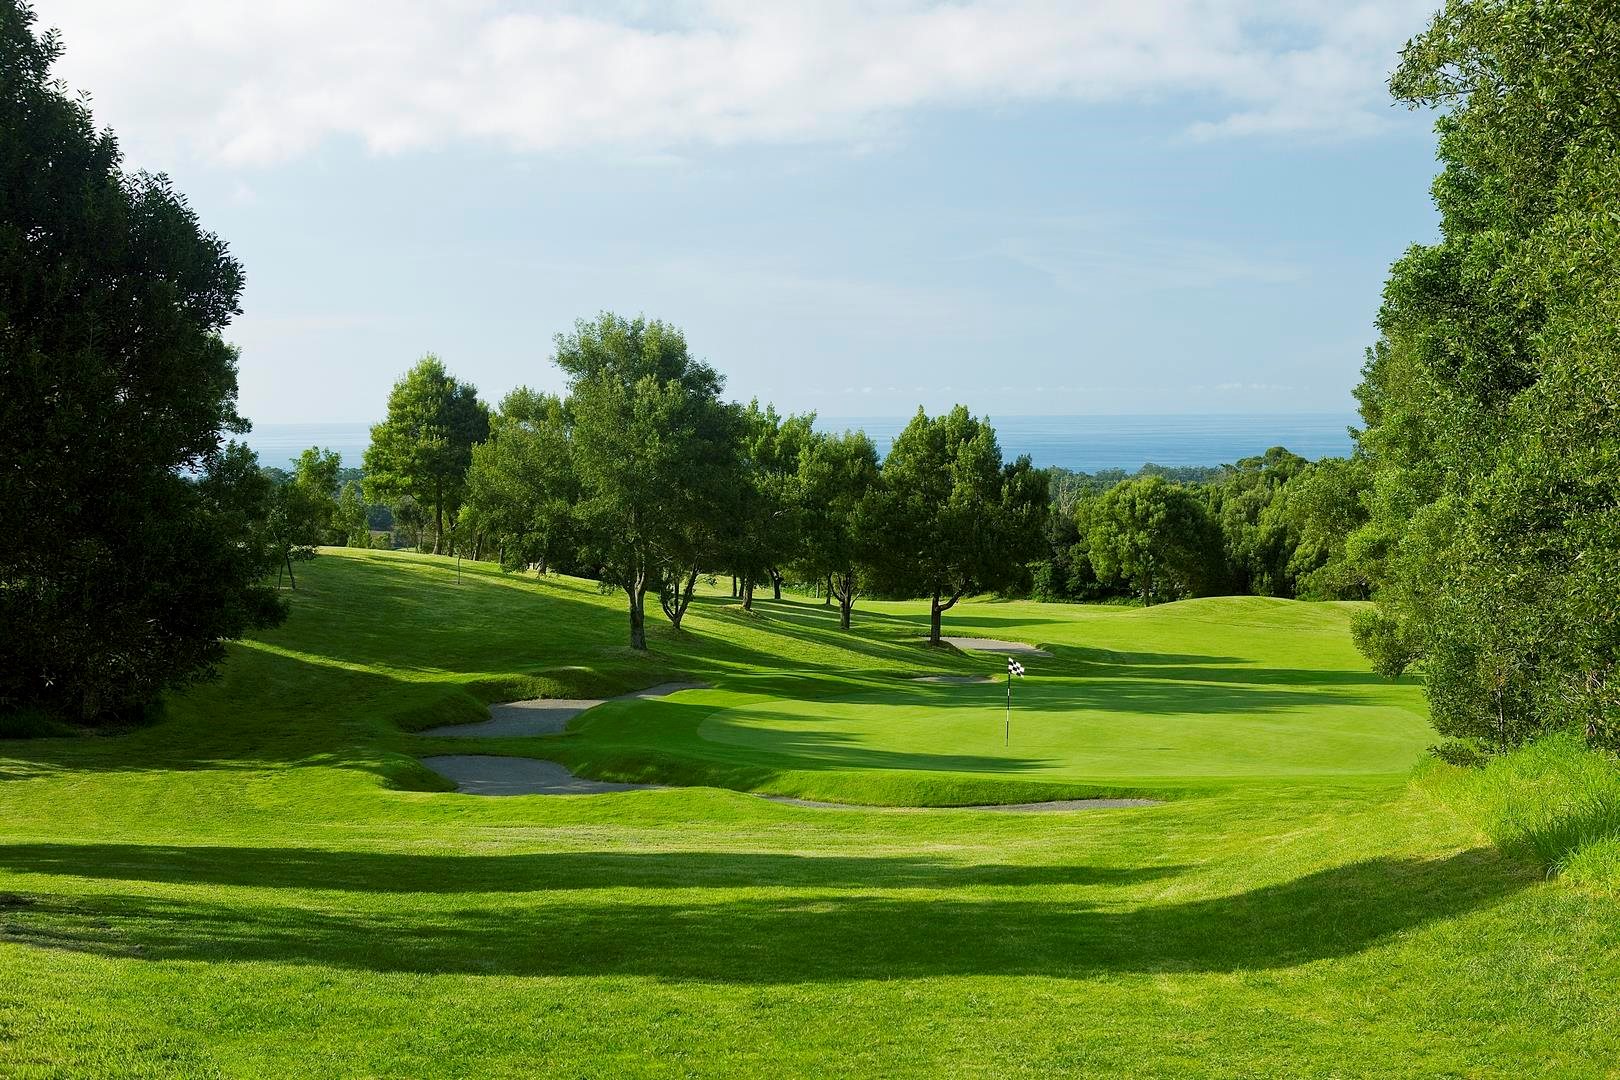 Batalha Golf Course 11 - São Miguel Island